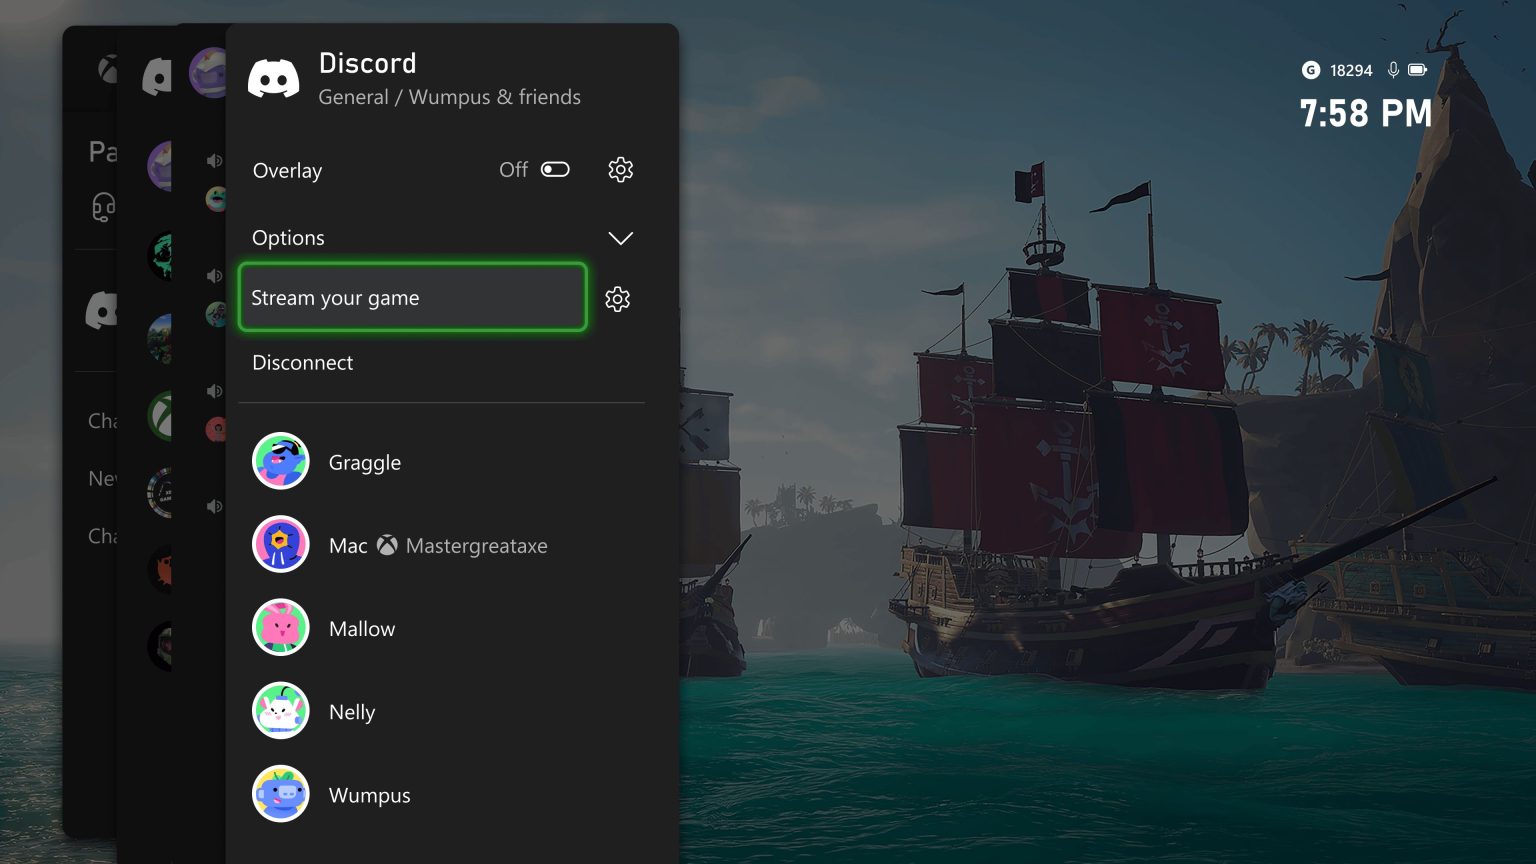 Microsoft har kunngjort at Xbox-brukere nå kan strømme spillingen sin via Discord direkte fra konsollen. Funksjonen er nå tilgjengelig for Xbox Insider-medlemmer.